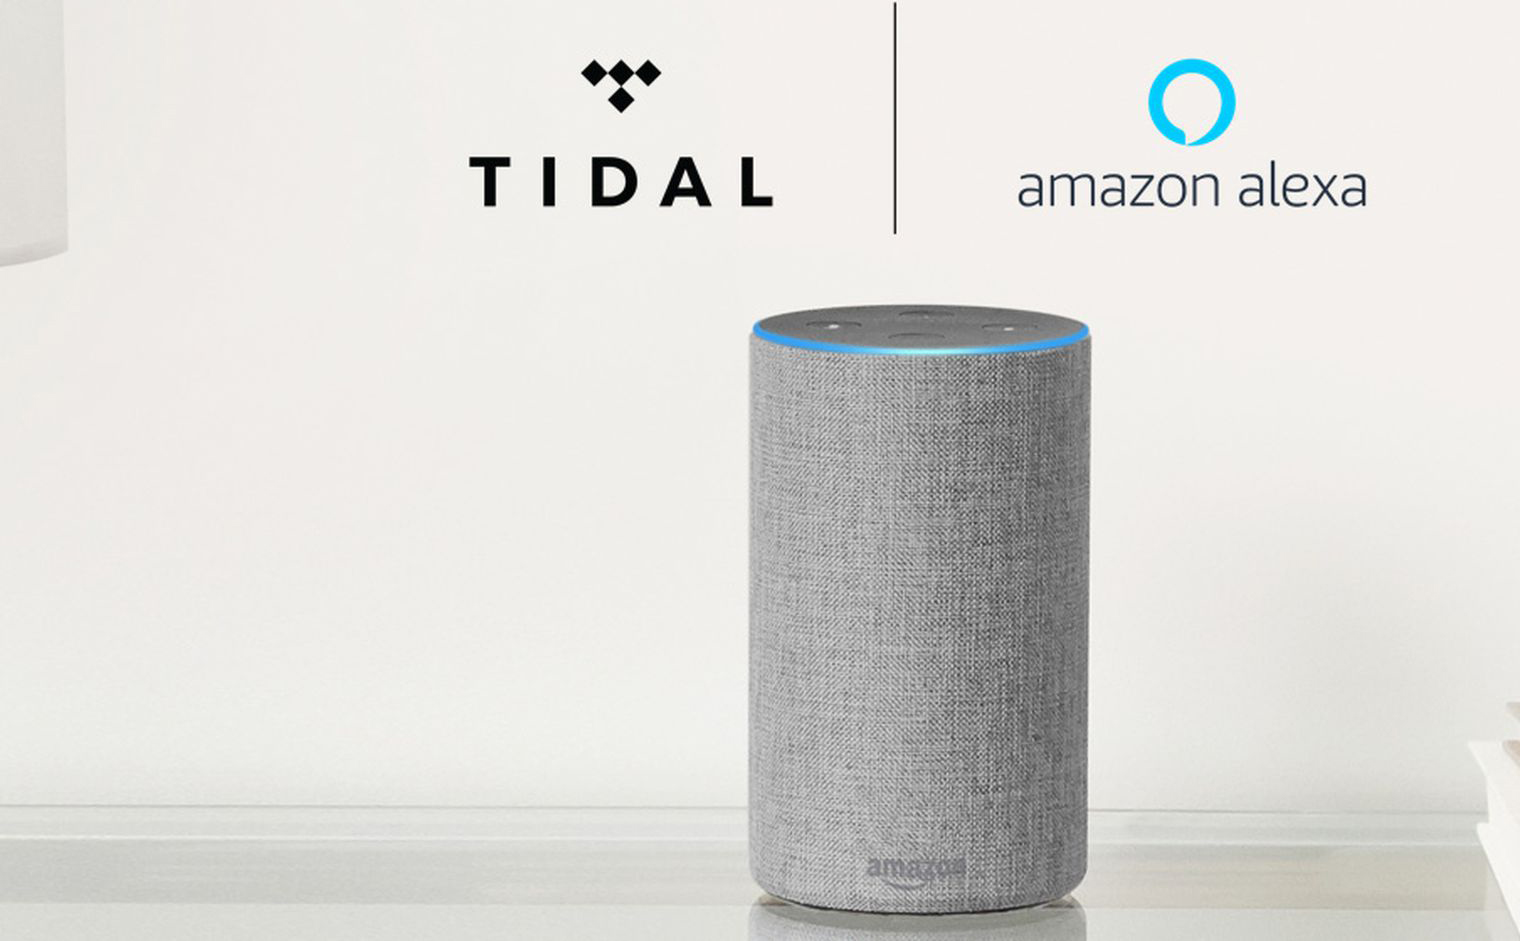 Dịch vụ stream nhạc Tidal chính thức có mặt trên các loa Amazon Echo